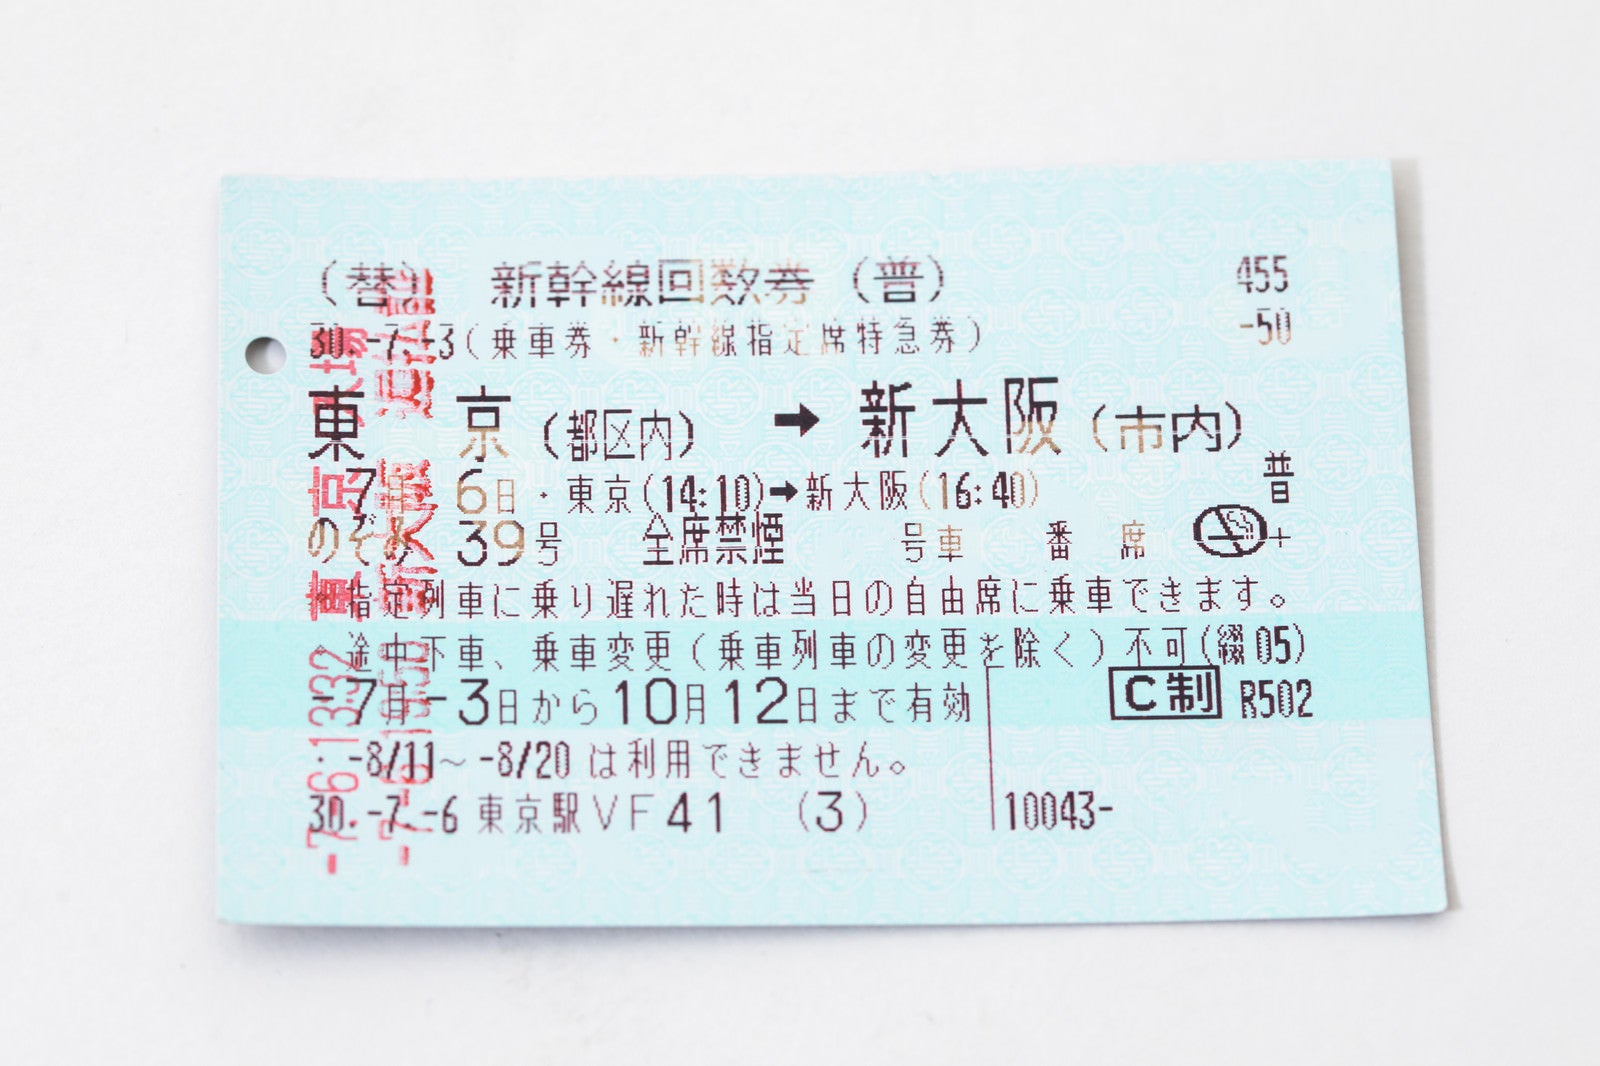 「東京→新大阪の払戻証」の写真